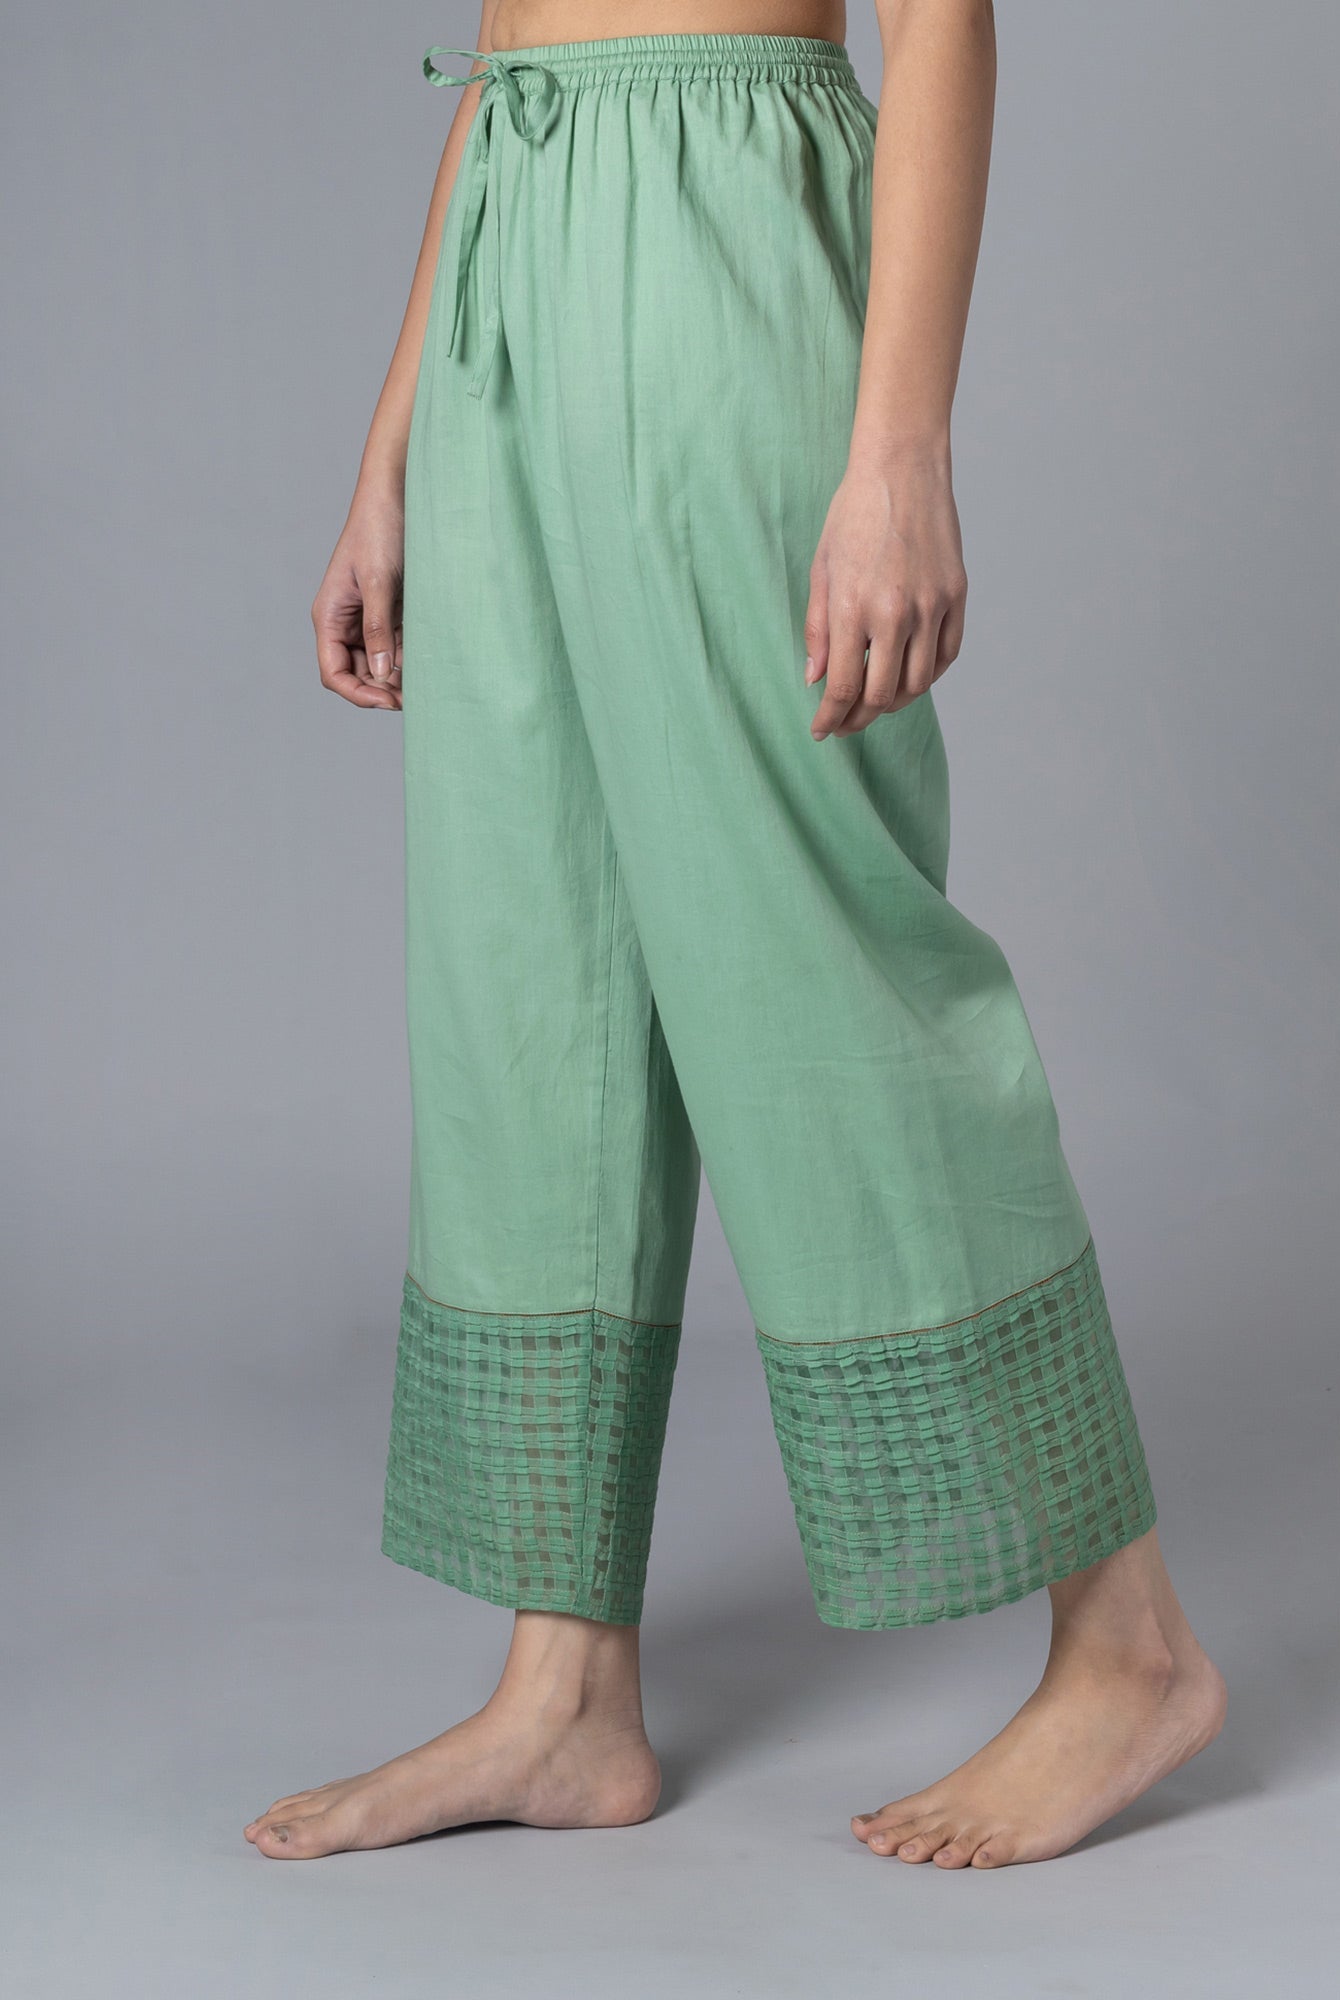 Noemia Pyjama - CiceroniPyjamaShades of India